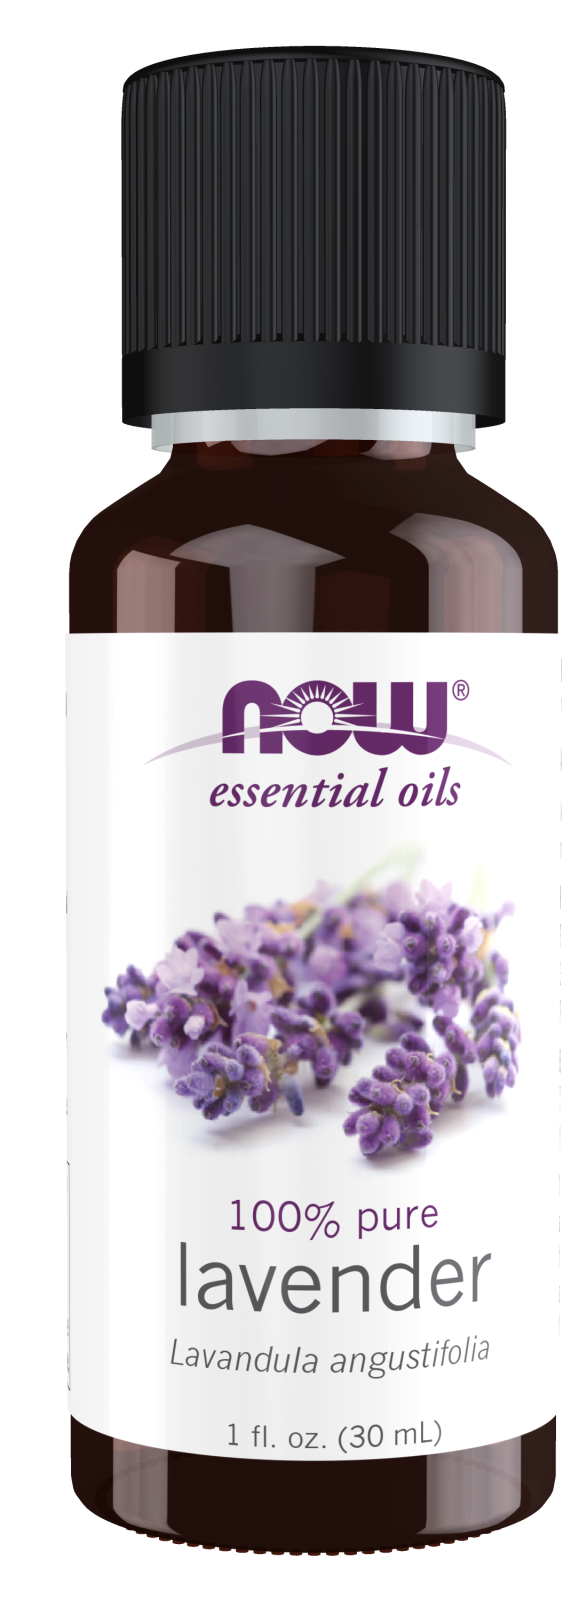 Lavender Oil - 1 fl. oz. Bottle Front